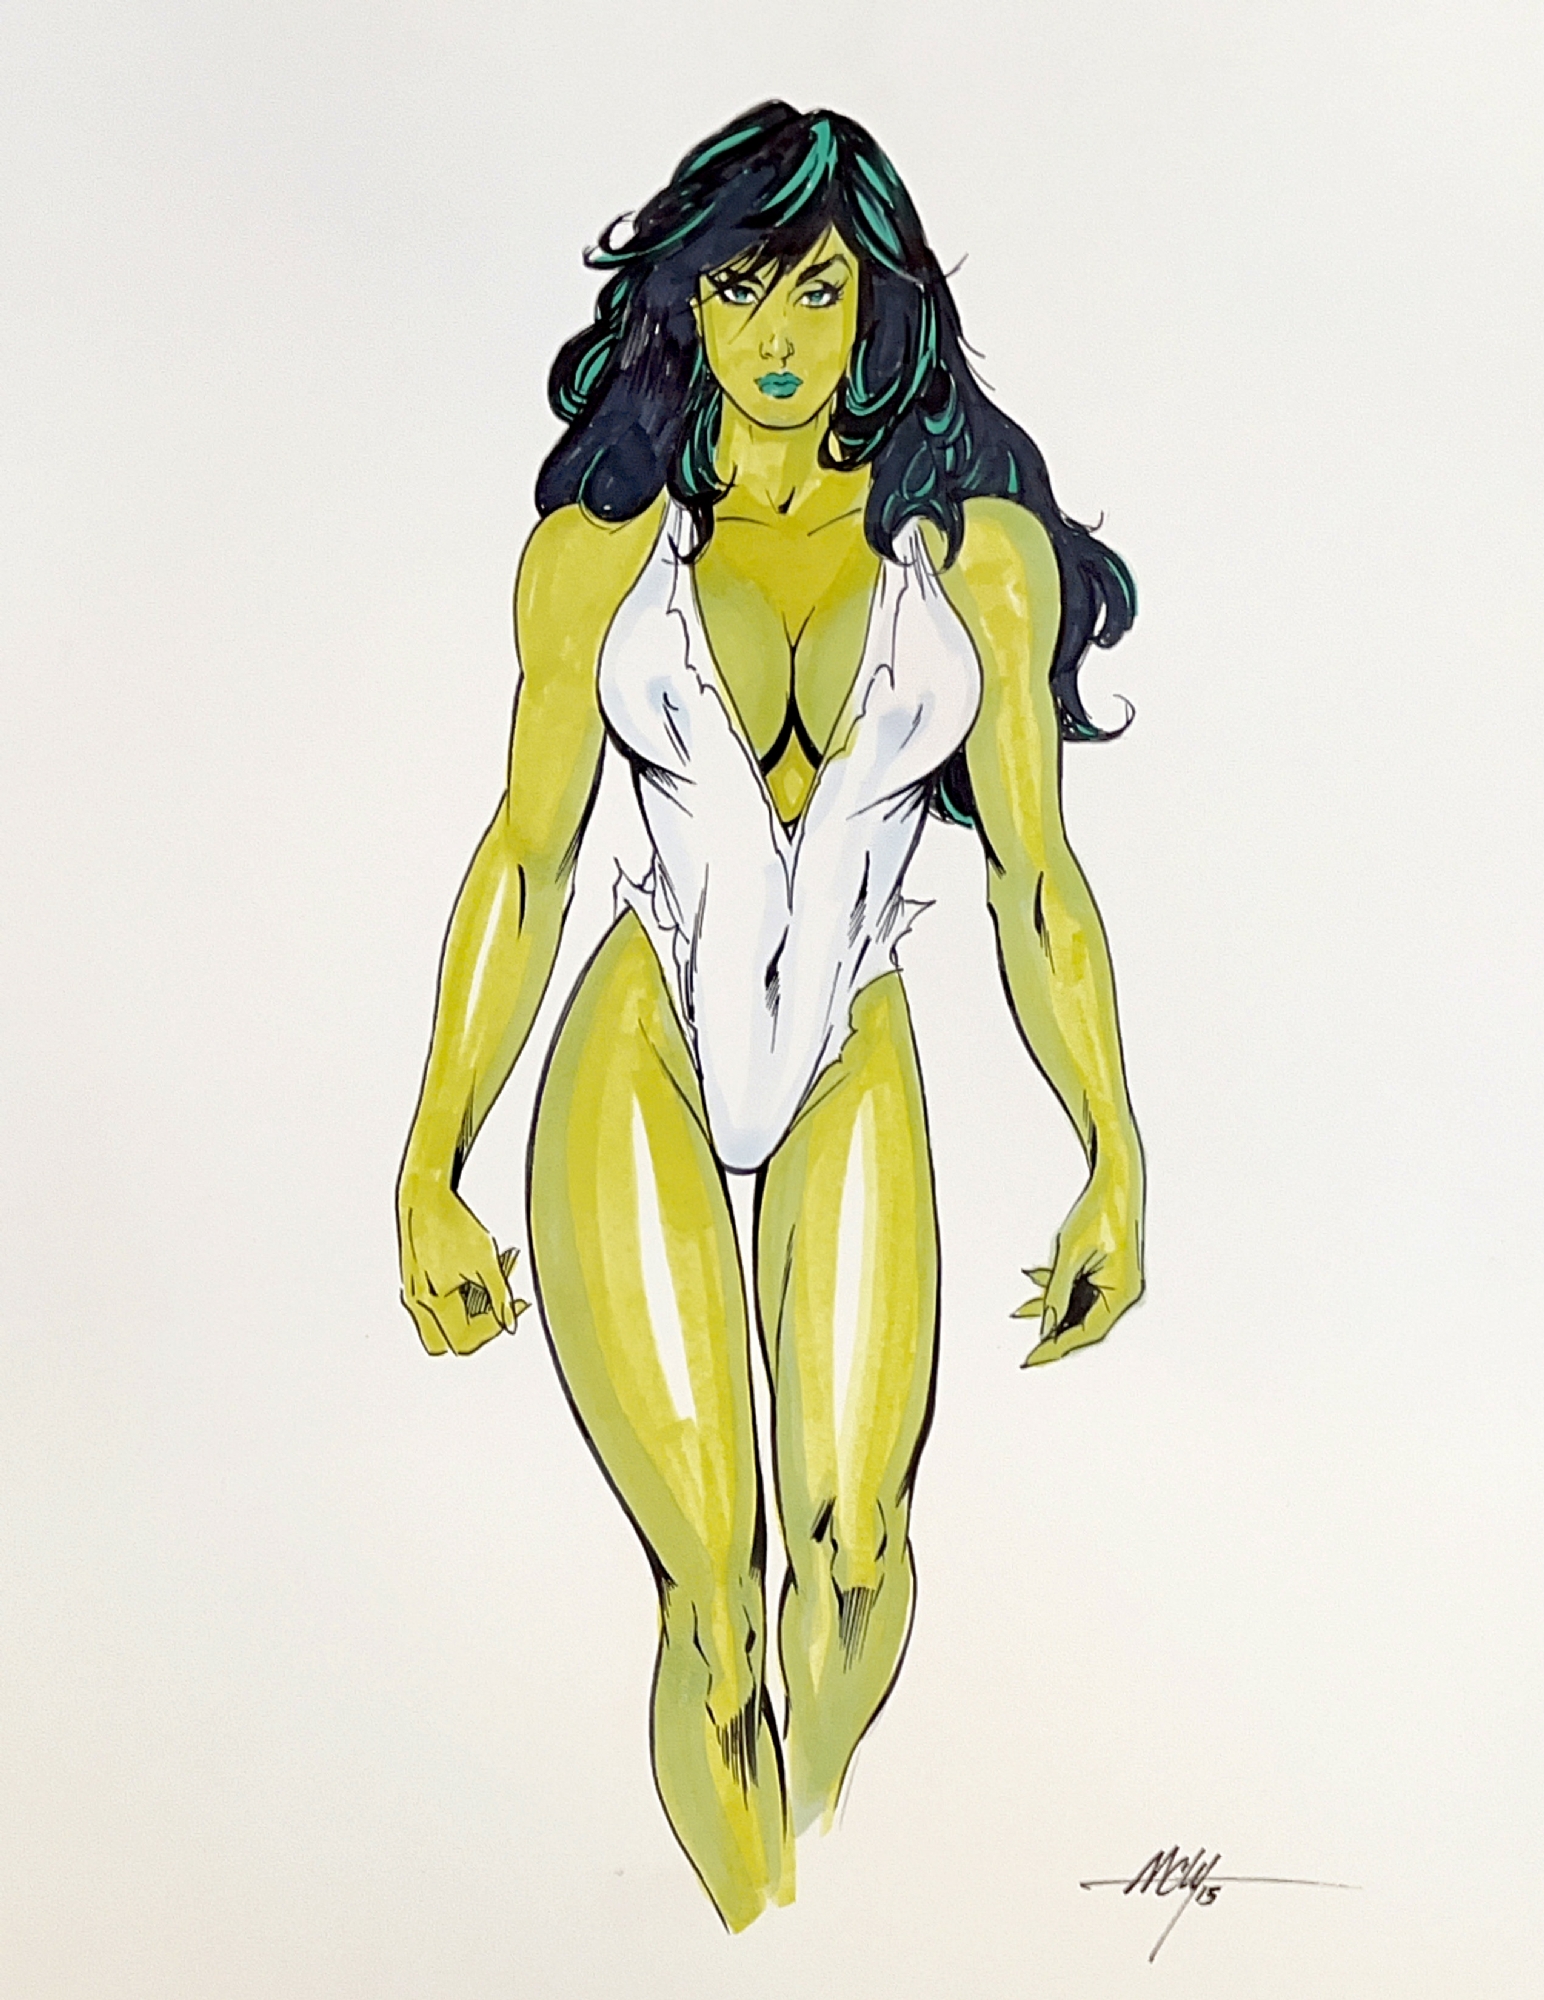 She Hulk by MC Wyman, in Paul Brzegowy's Brz99 Comic Art Gallery Room